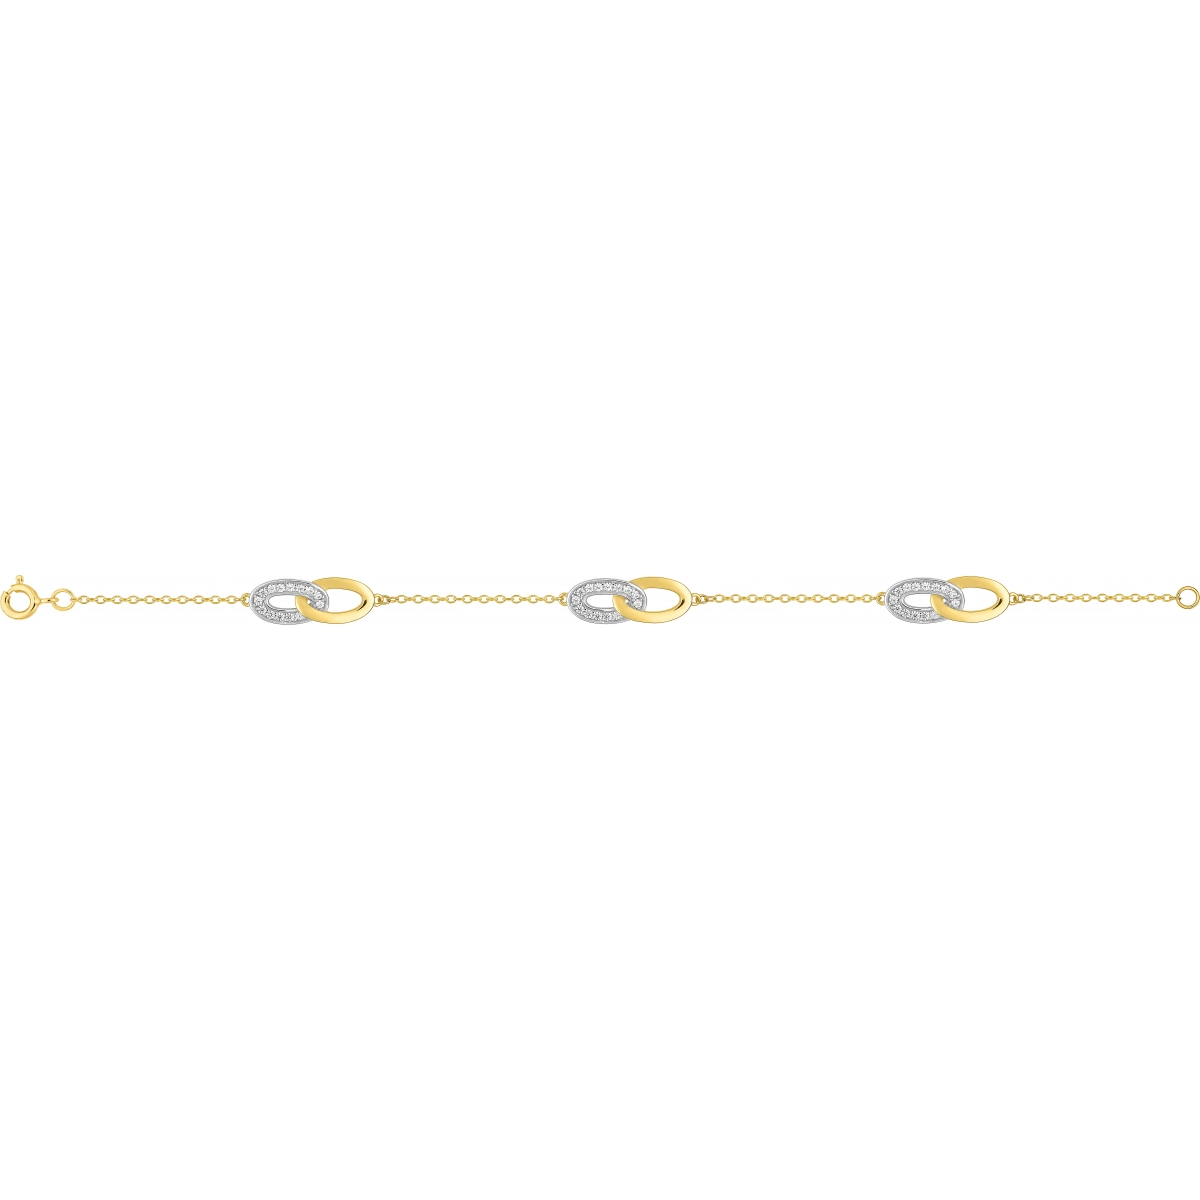 Pulseira 18cm com Zircônia cúbica banhado a ouro bicolor BSBG47Z18 Lua blanca BSBG47Z18.0